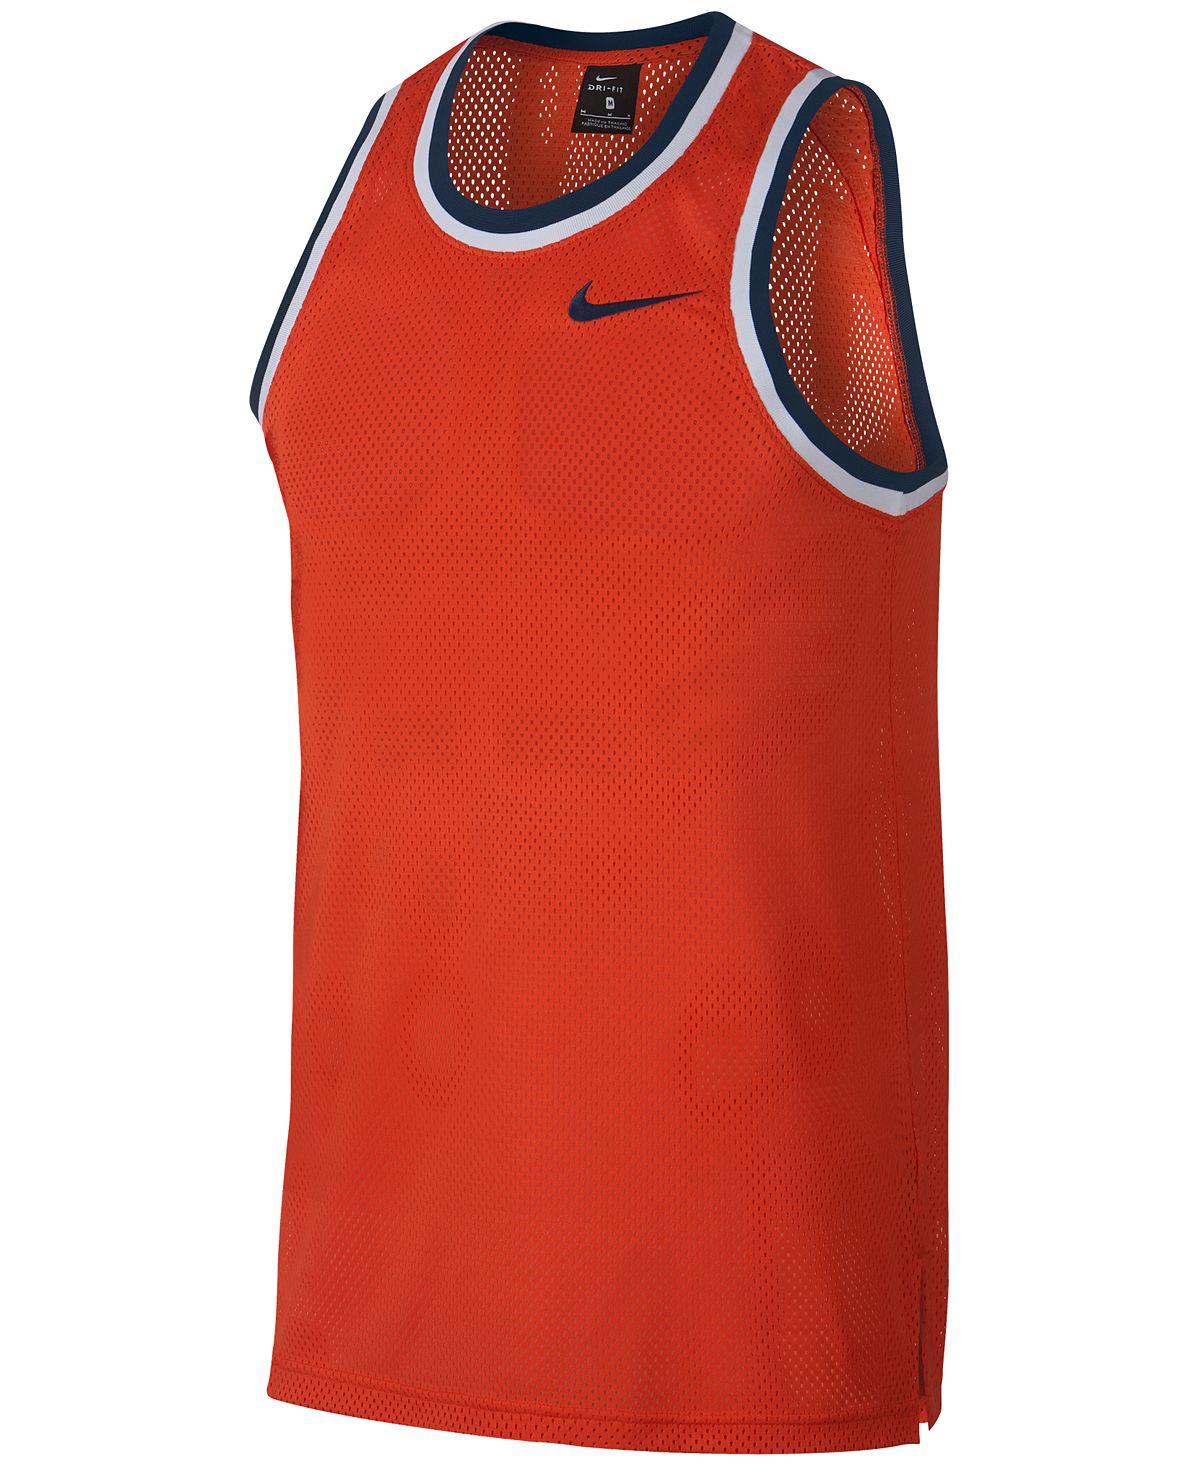 Nike Dri-fit Mesh Basketball Jersey Team Orange